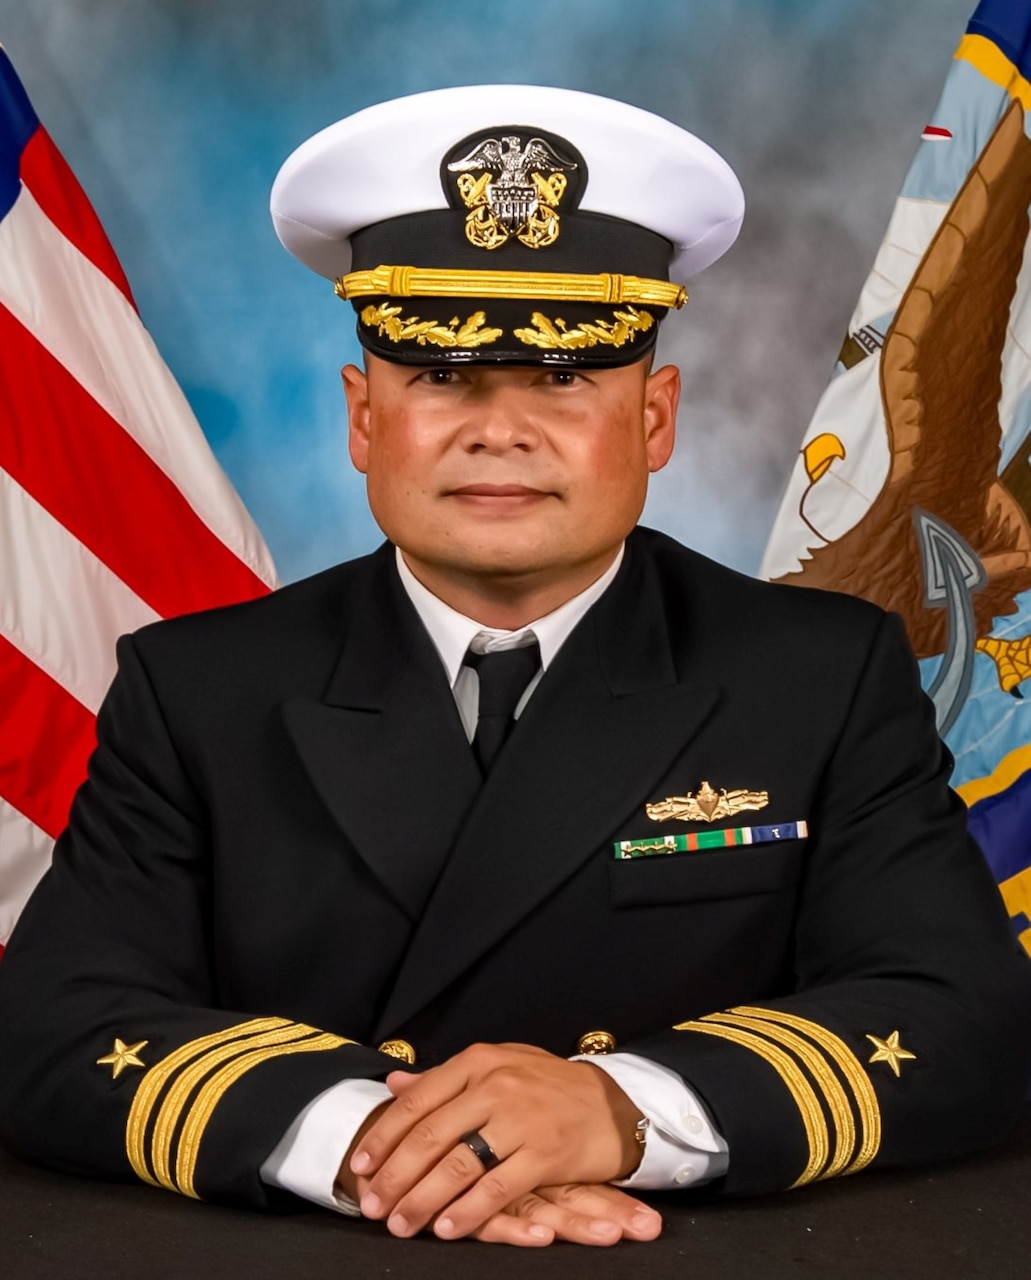 Commander Christopher D. Caraway